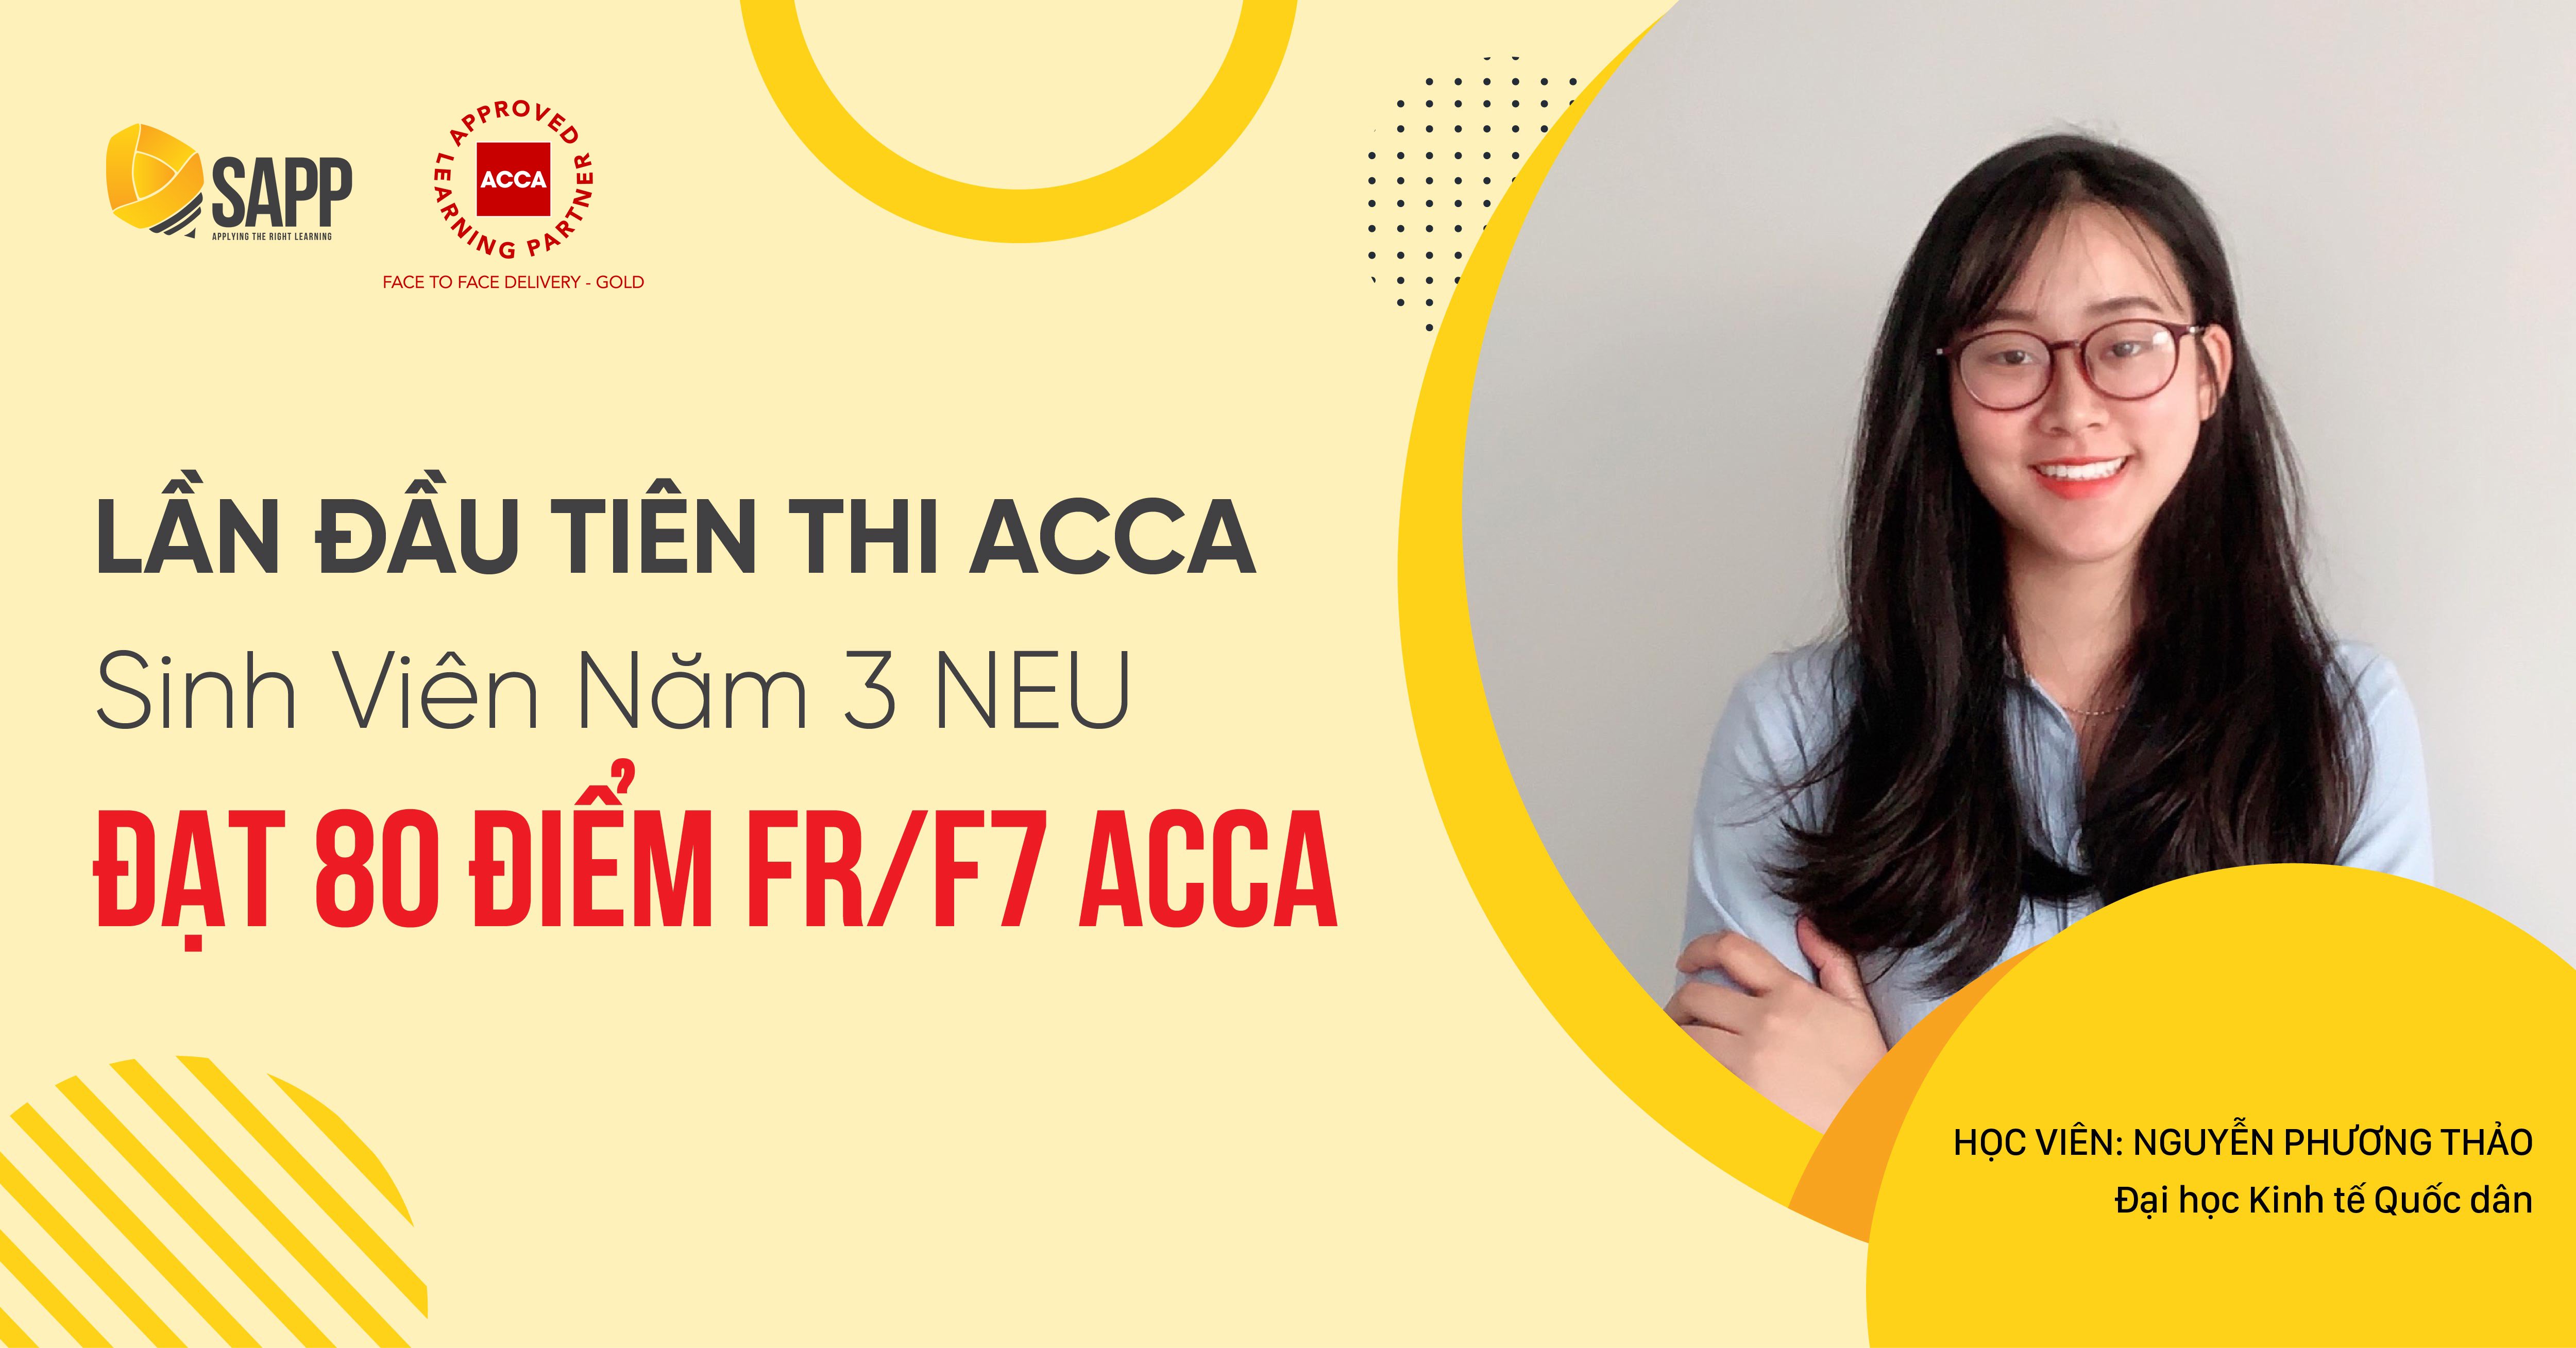 Bí quyết thi FR/F7 ACCA đạt 80 điểm trong lần đầu thi ACCA của sinh viên năm 3 Đại học Kinh tế Quốc dân